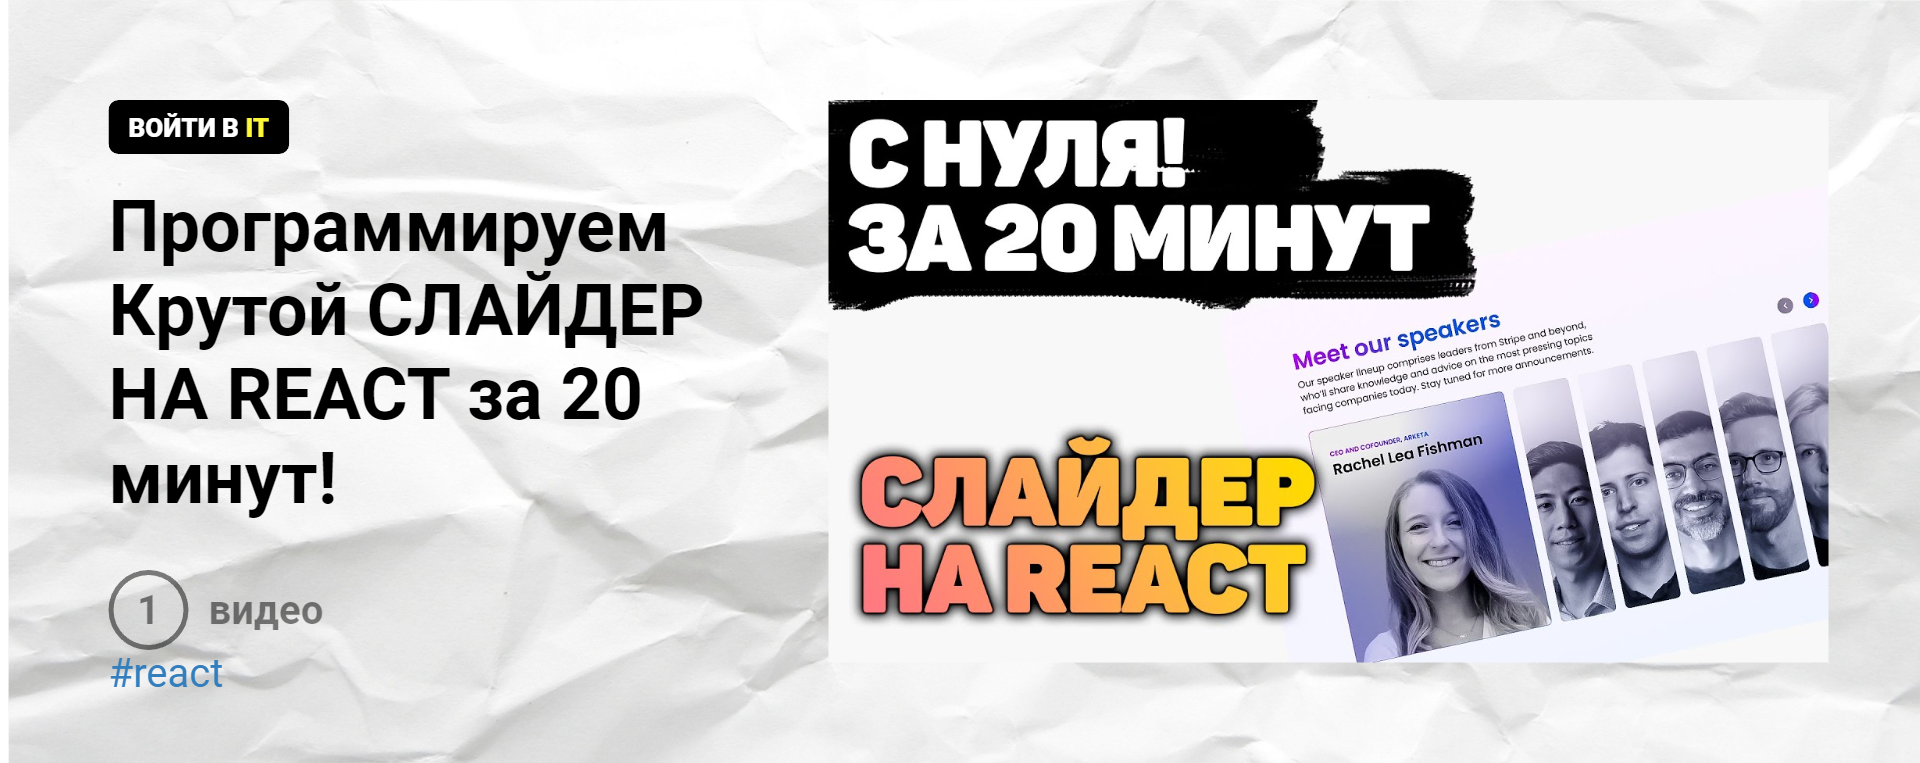 Телеграмм вход без регистрации по номеру телефона онлайн на русском бесплатно фото 80